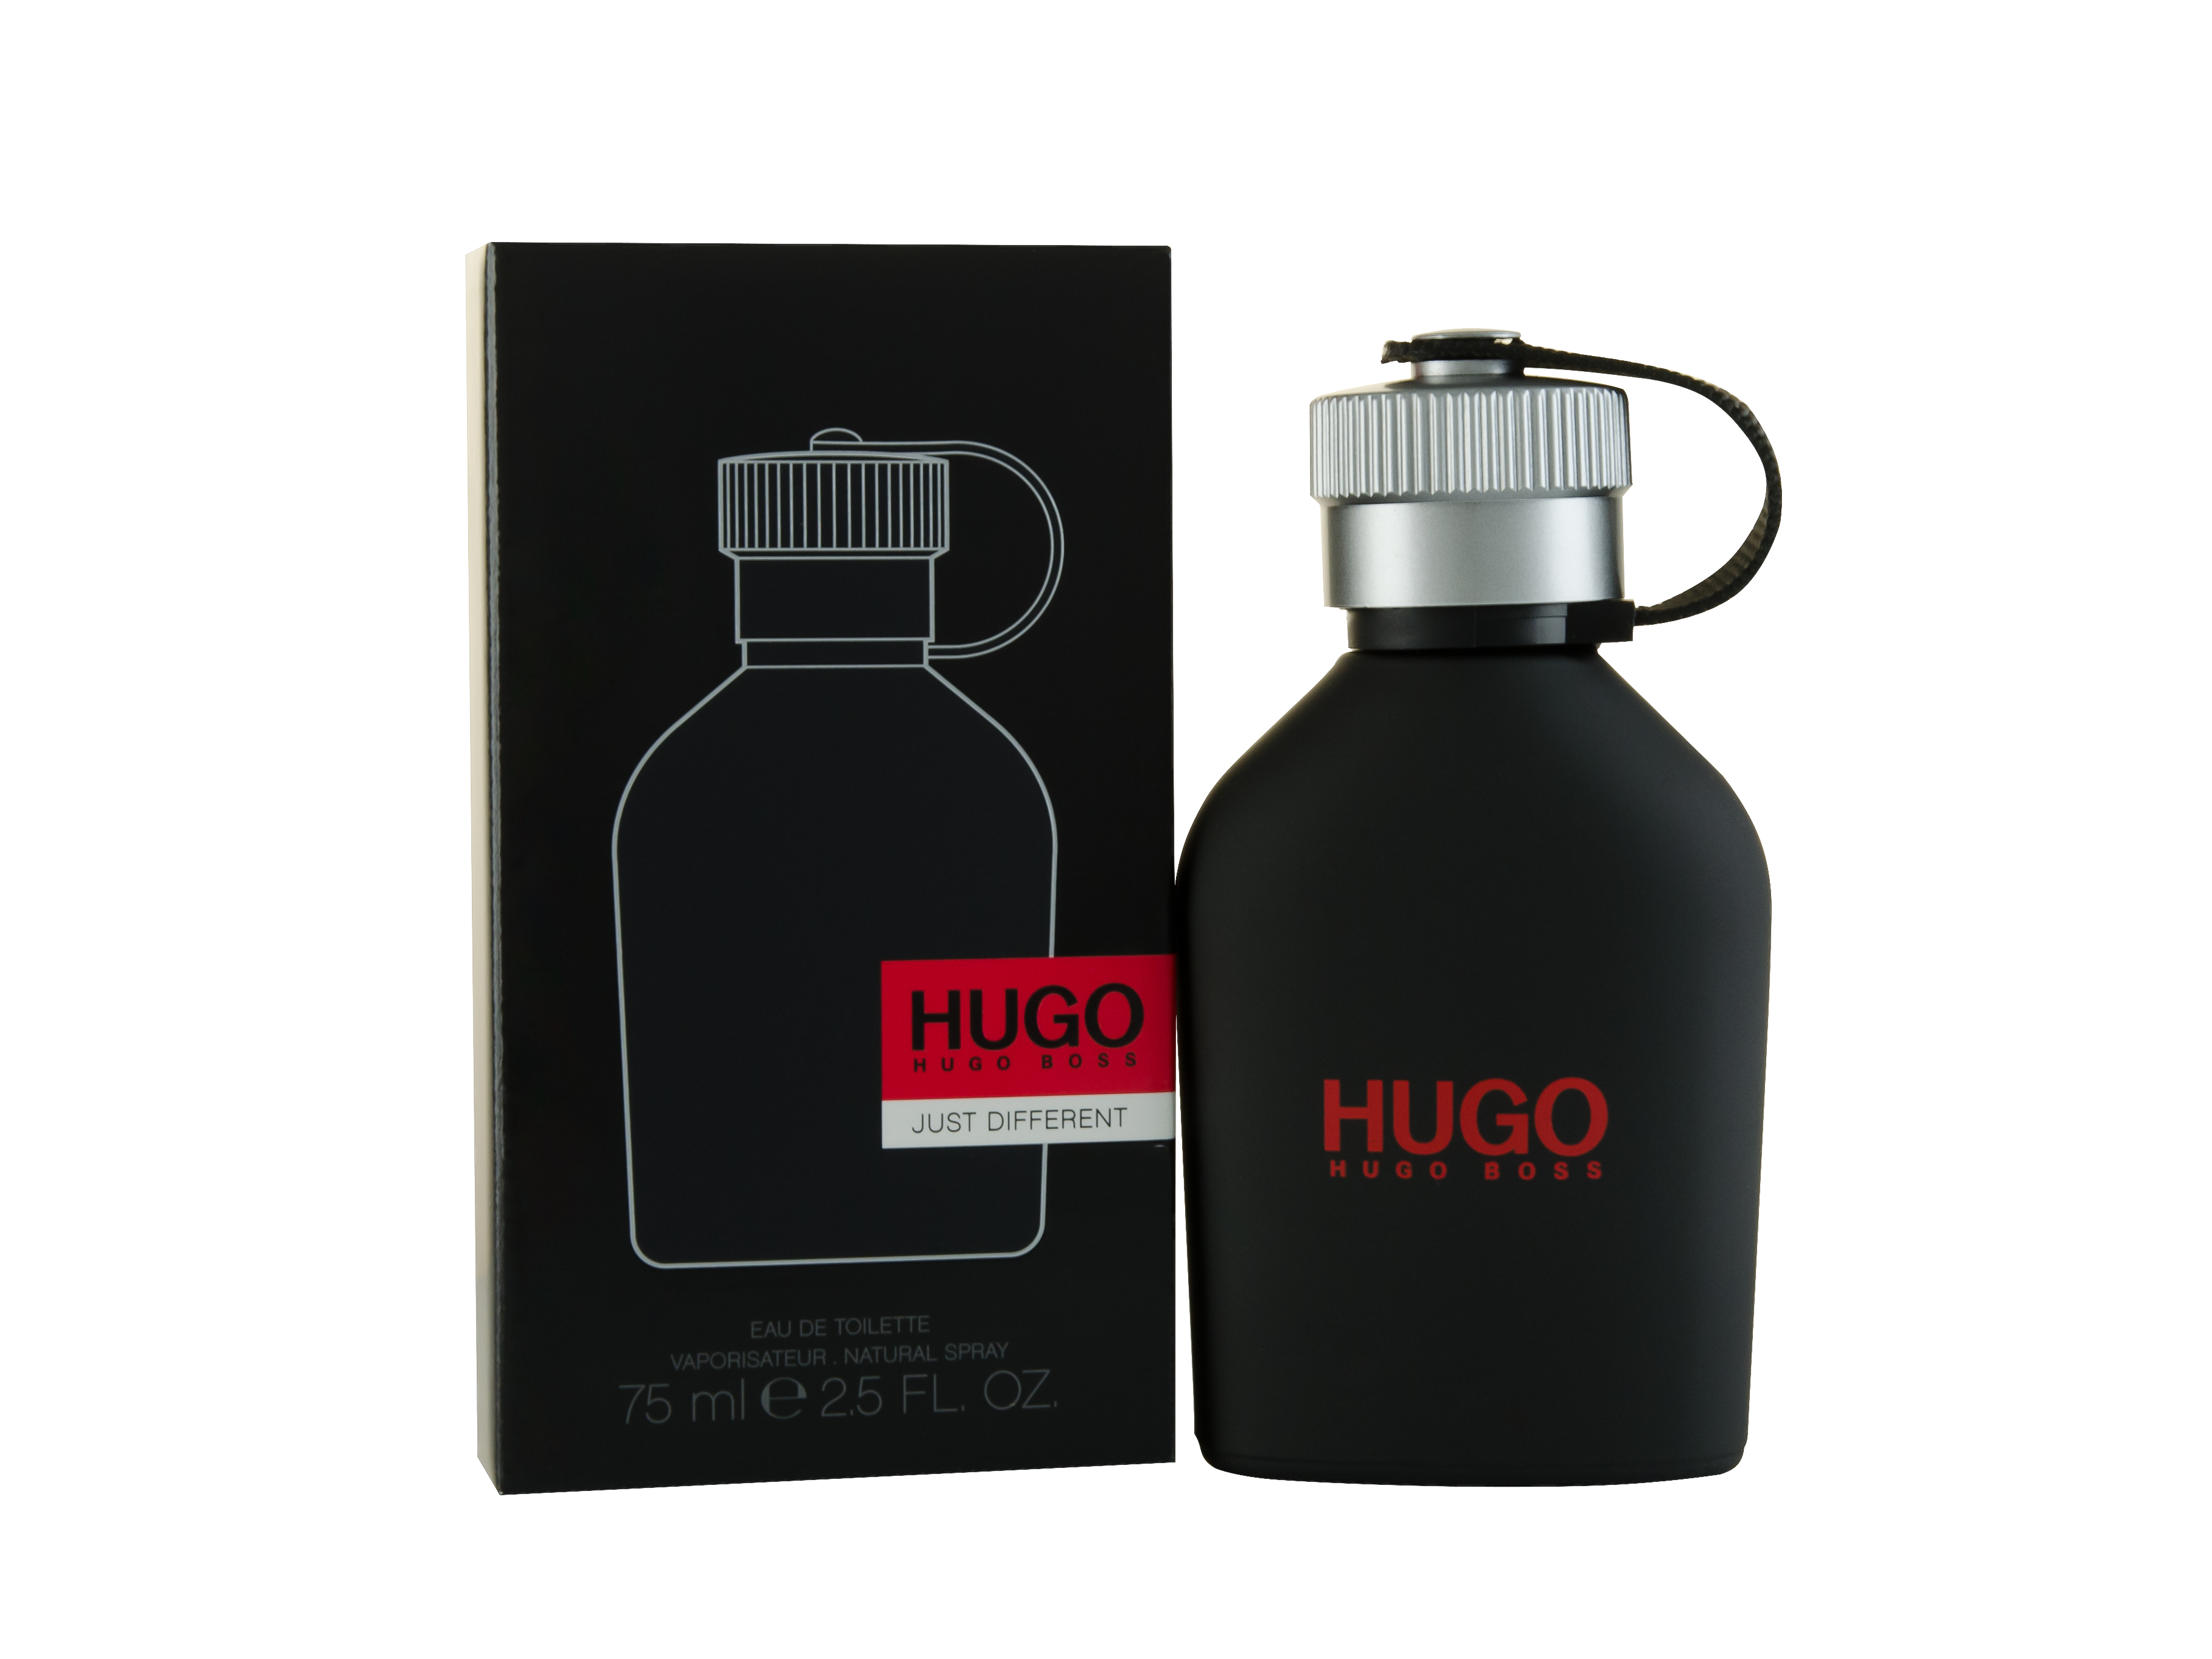 Boss hugo boss описание аромата. Hugo Boss just different EDT 40 ml. Hugo Boss just different Хуго босс 150 мл. Hugo Boss мужской Hugo туалетная вода (EDT) 75мл. Hugo Boss just different 125 мл.